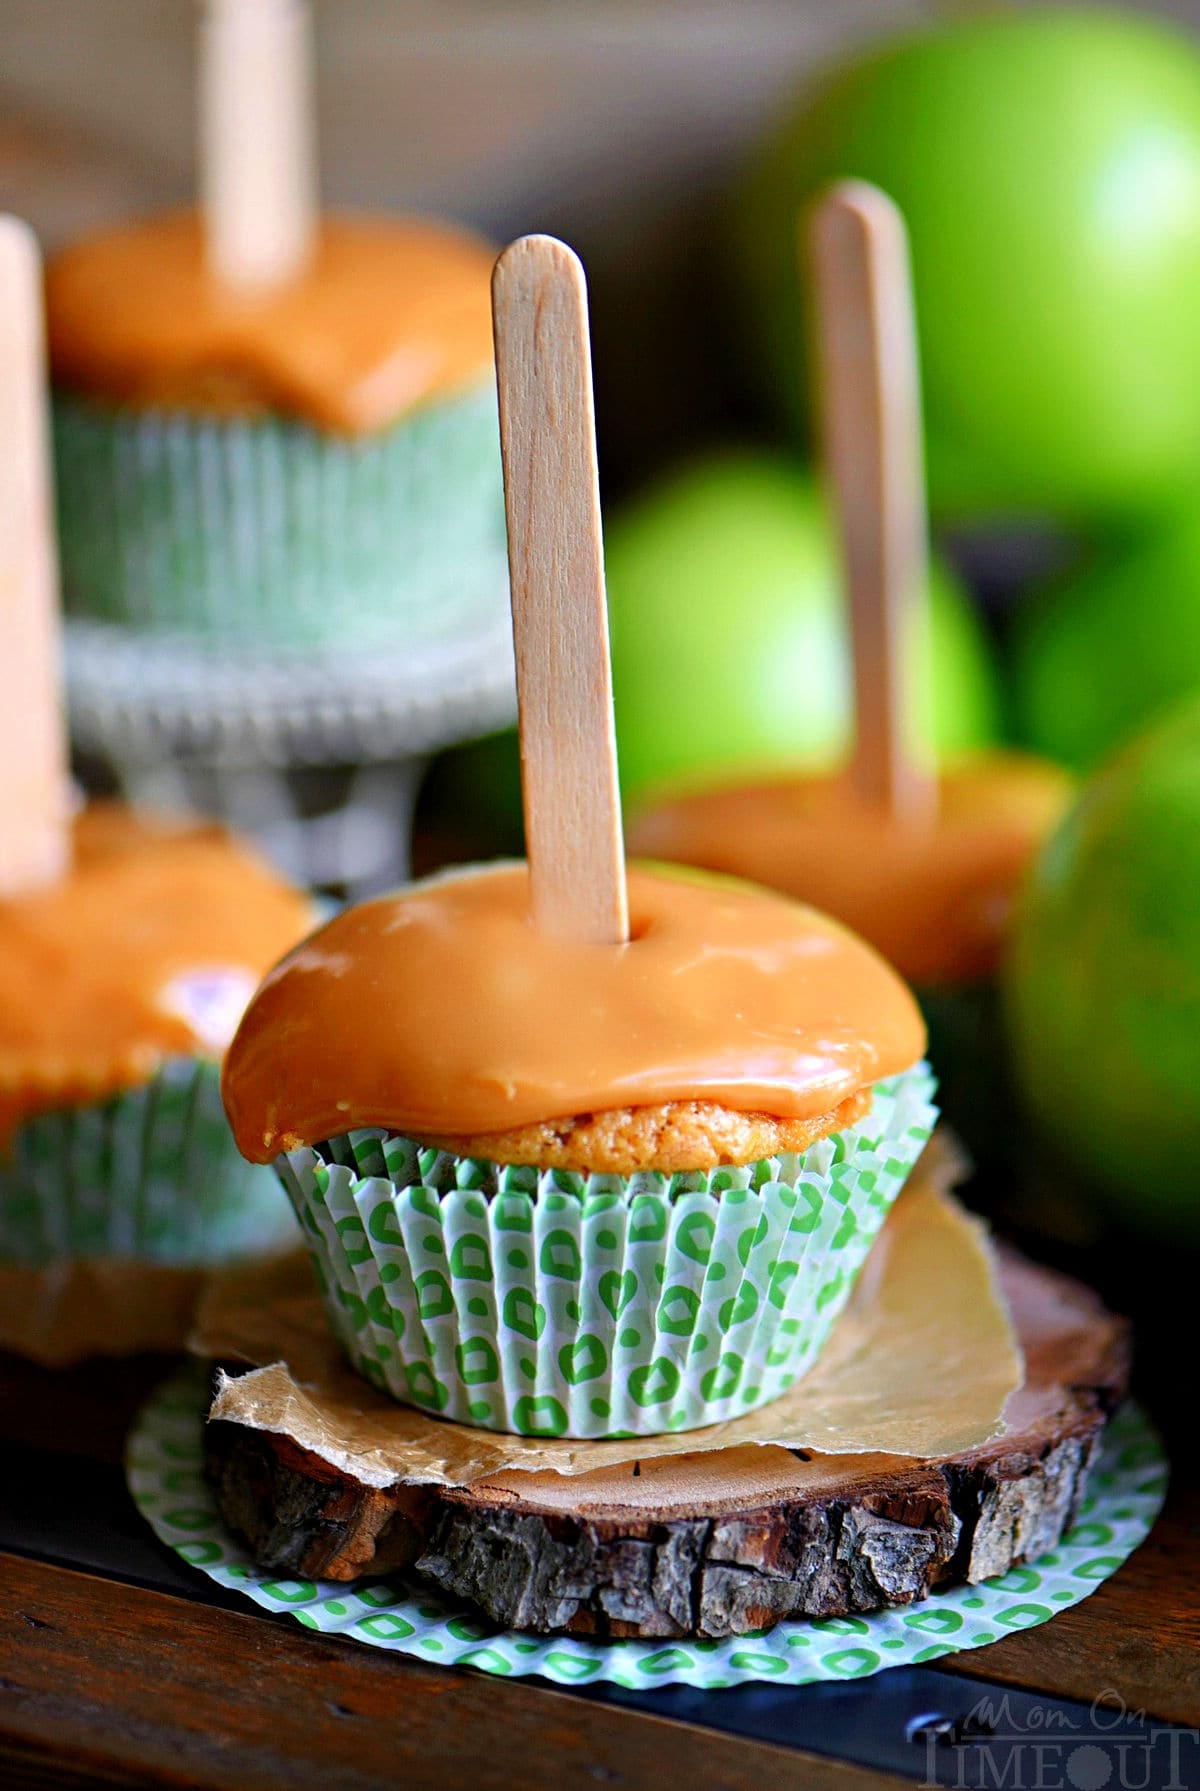 cupcake alle mele guarnito con glassa al caramello e un bastoncino di ghiacciolo inserito nella parte superiore.  Sullo sfondo si possono vedere un altro paio di cupcakes.